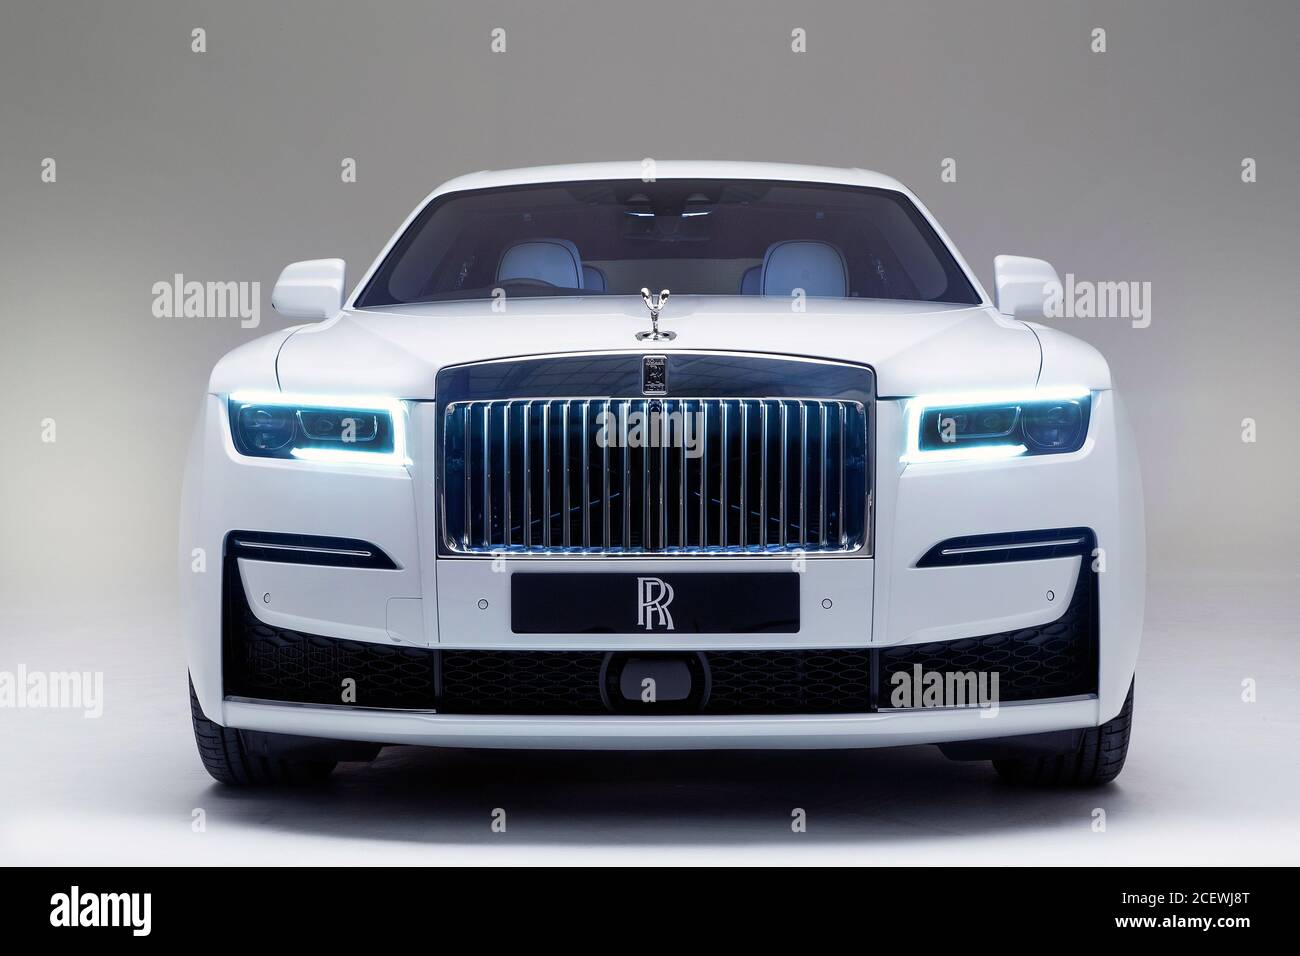 Fantôme Rolls Royce Banque d'image et photos - Alamy